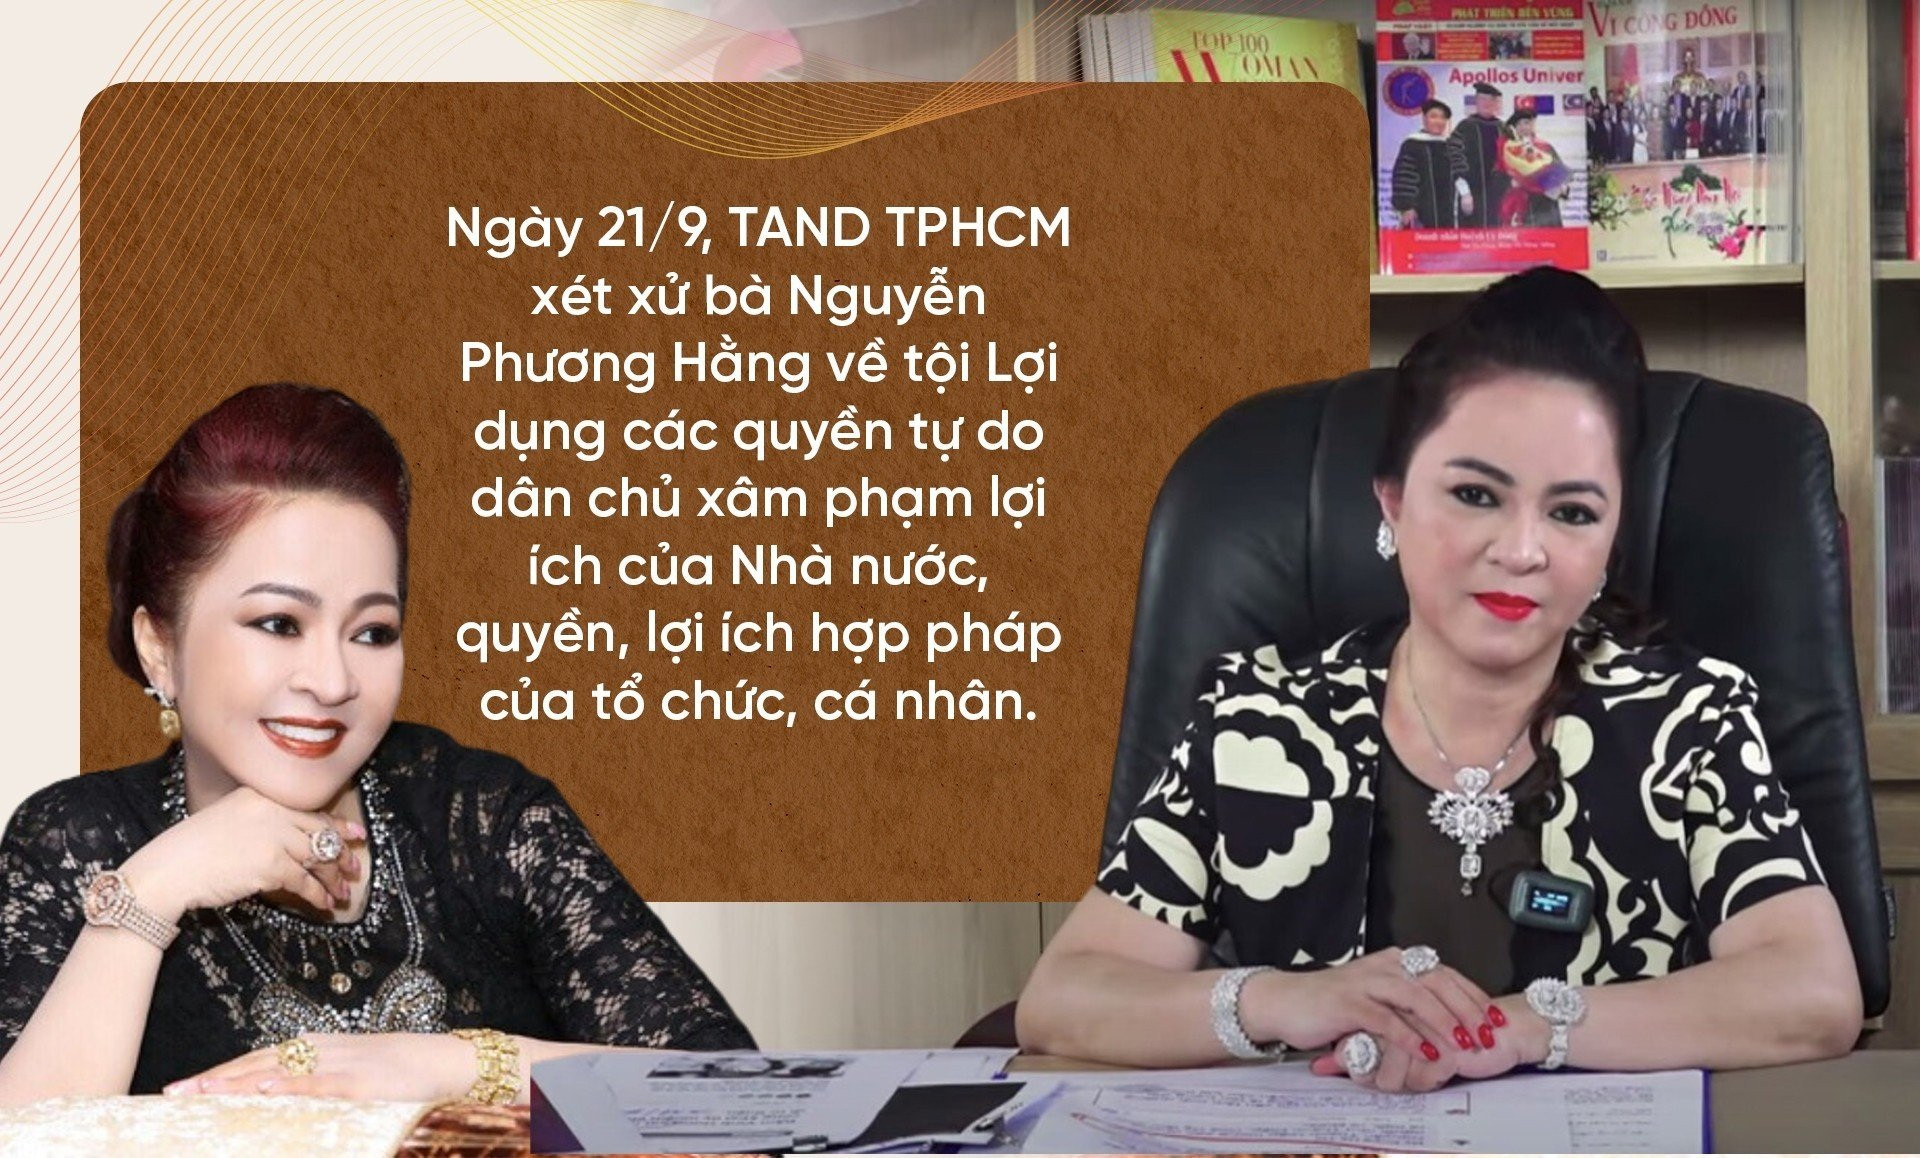 Một năm khuấy đảo MXH tới ngày vướng lao lý của bà Nguyễn Phương Hằng - 17